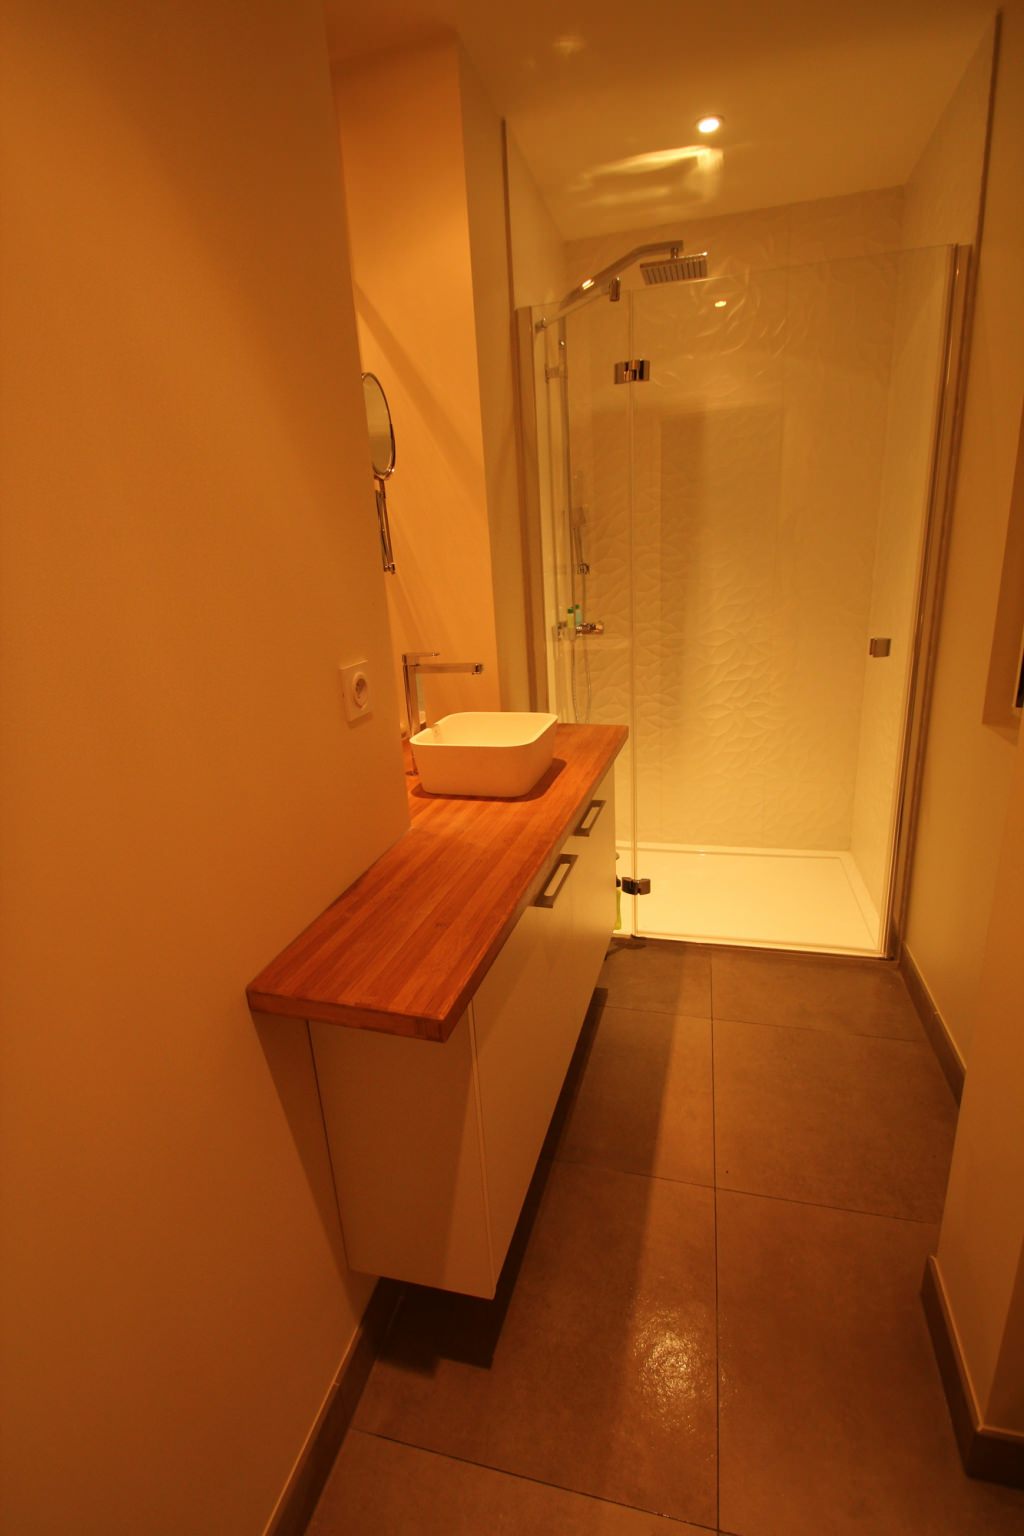 Salle de bain avec plan de travail en bambou